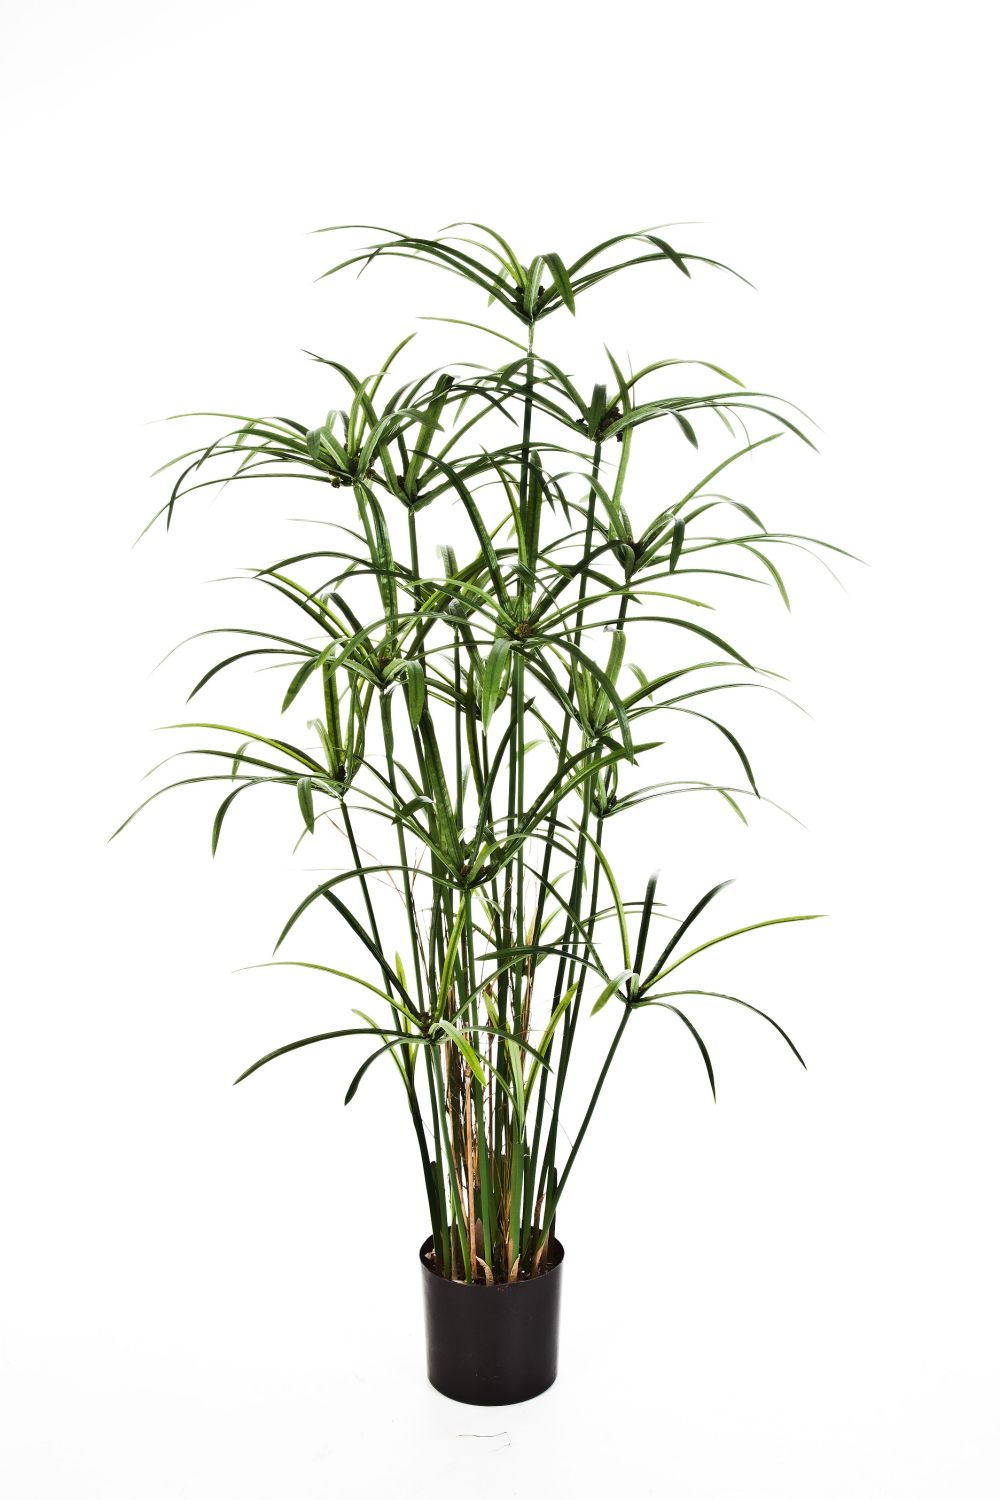 Dekopflanze grün, ALBY, Zyperngras 125cm